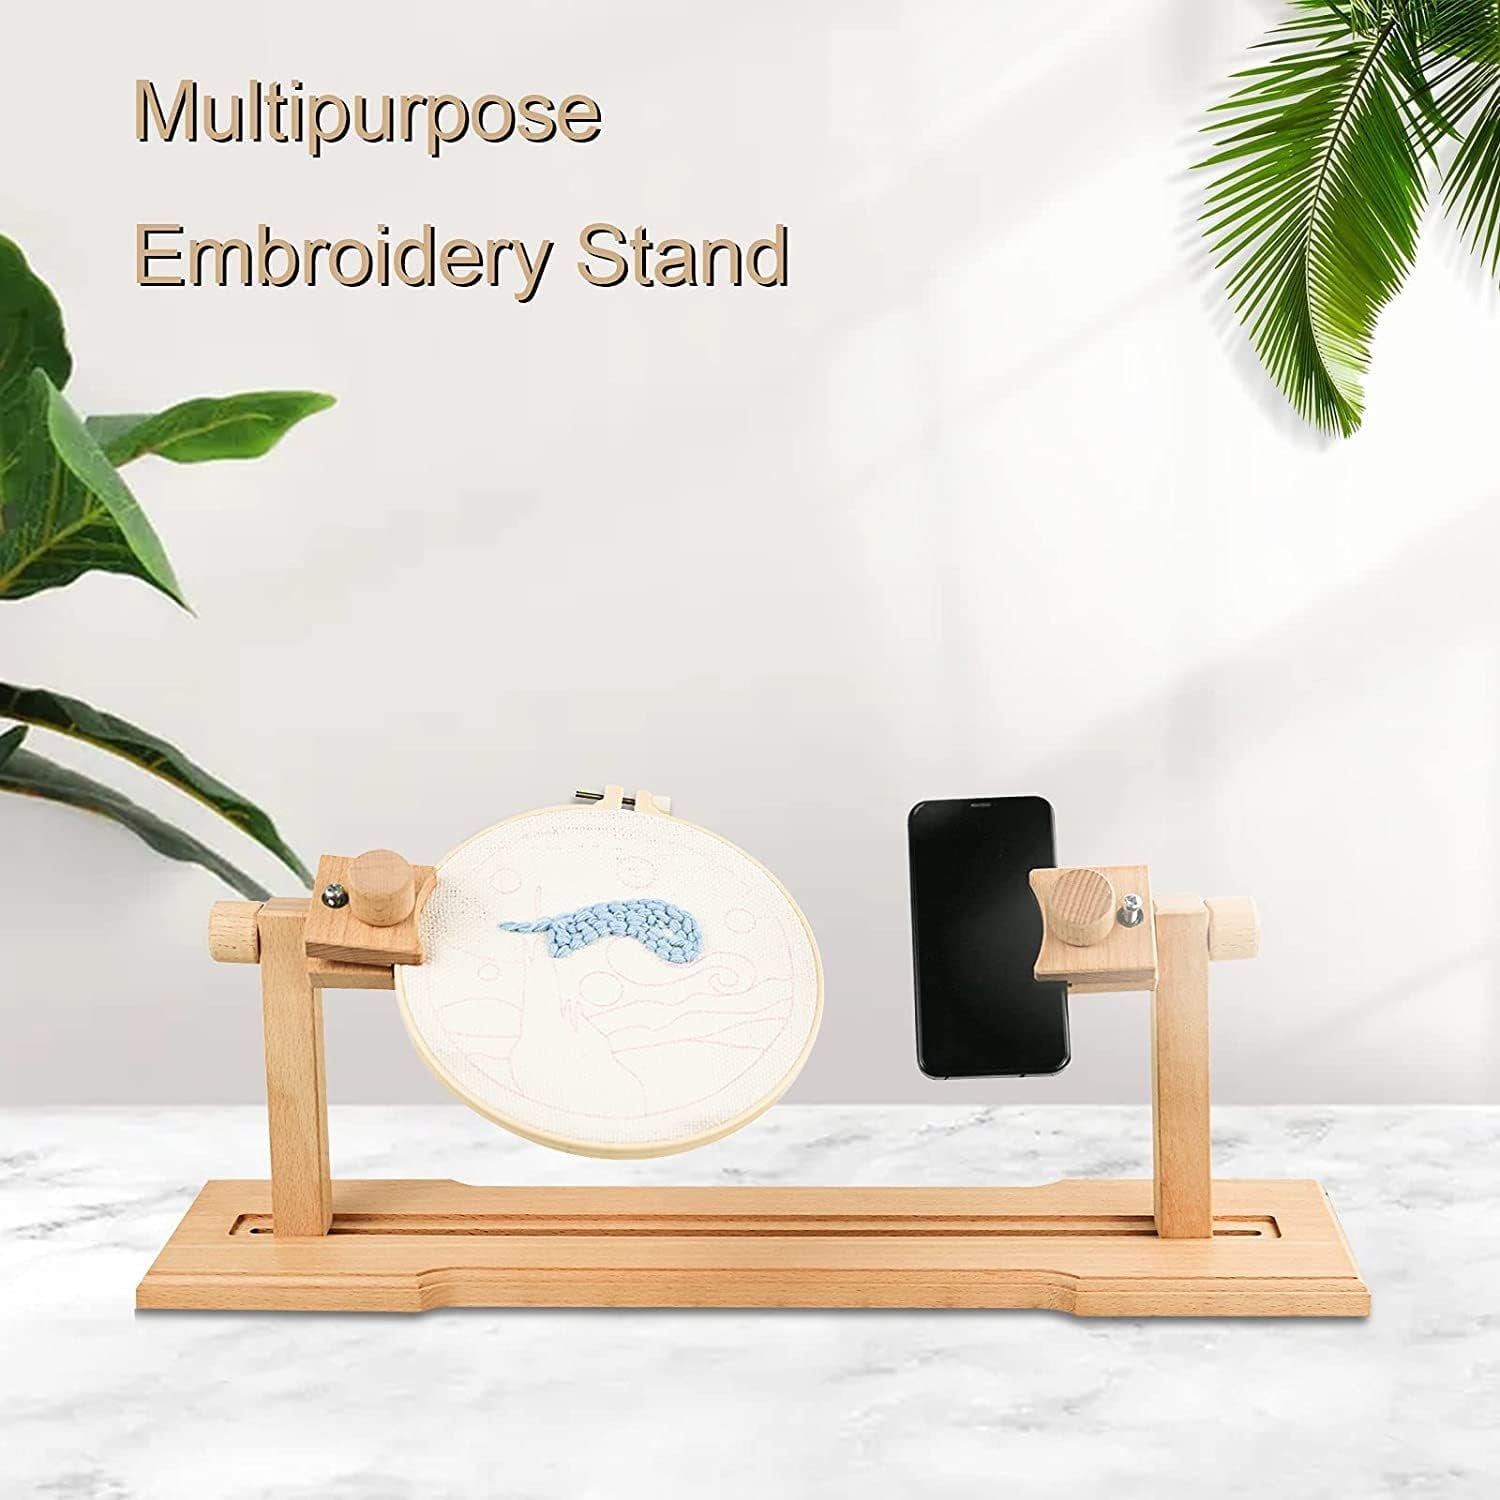 Wooden Embroidery Lap Adjustable Hoop & Frame Holder Stand-1 Set 3